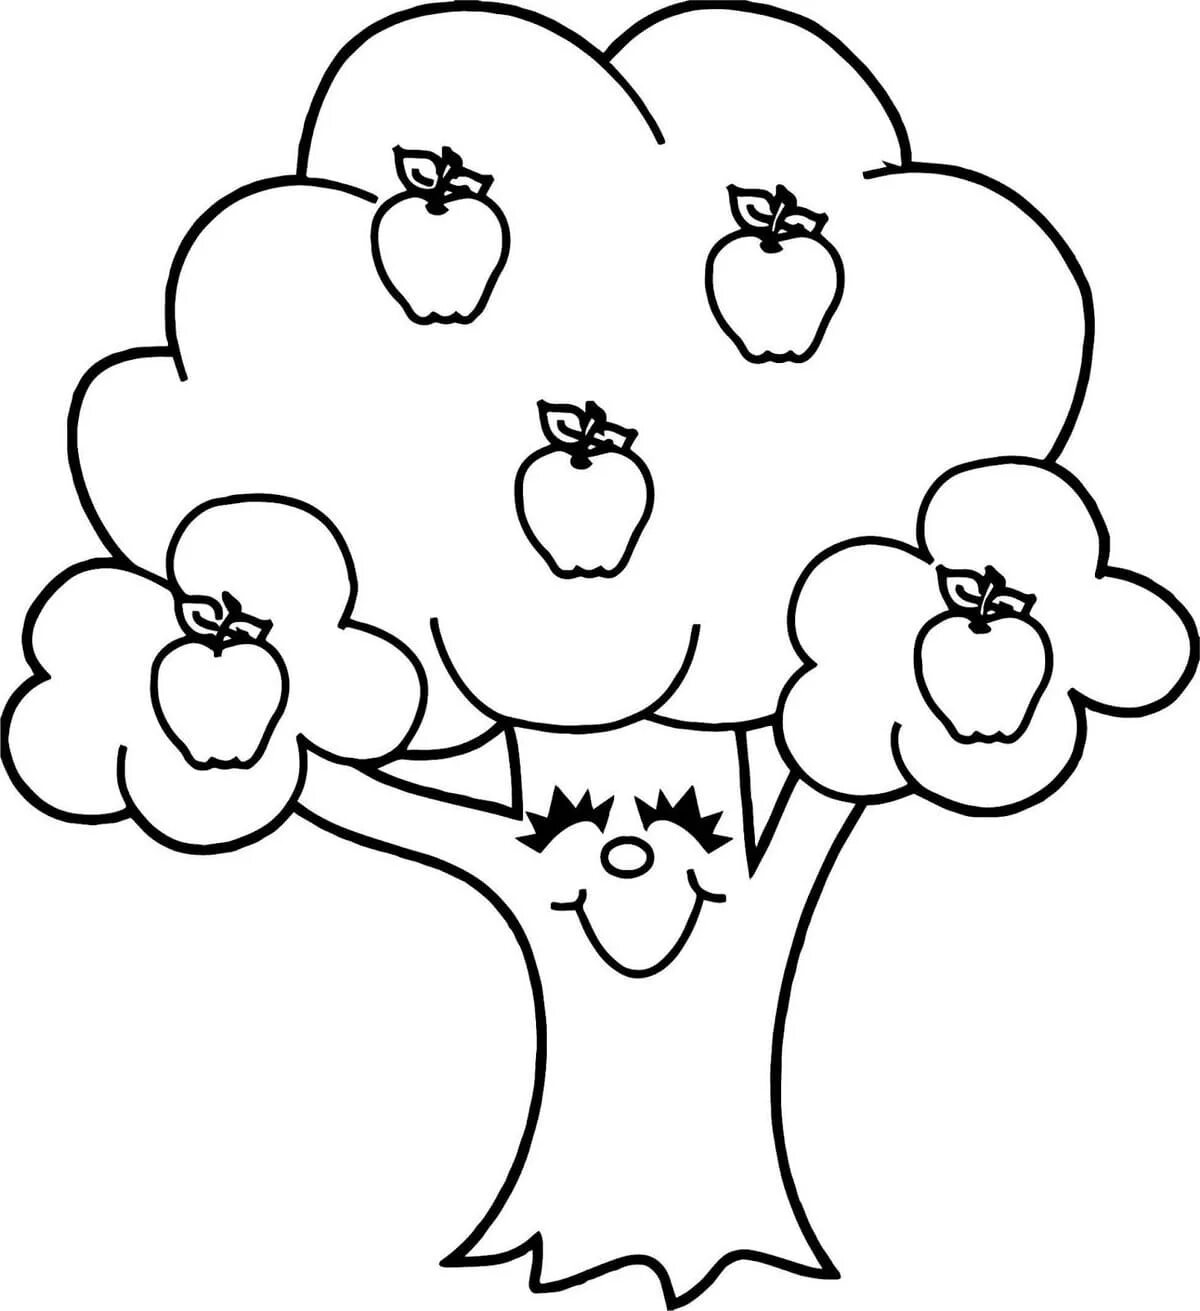 Apple tree #2